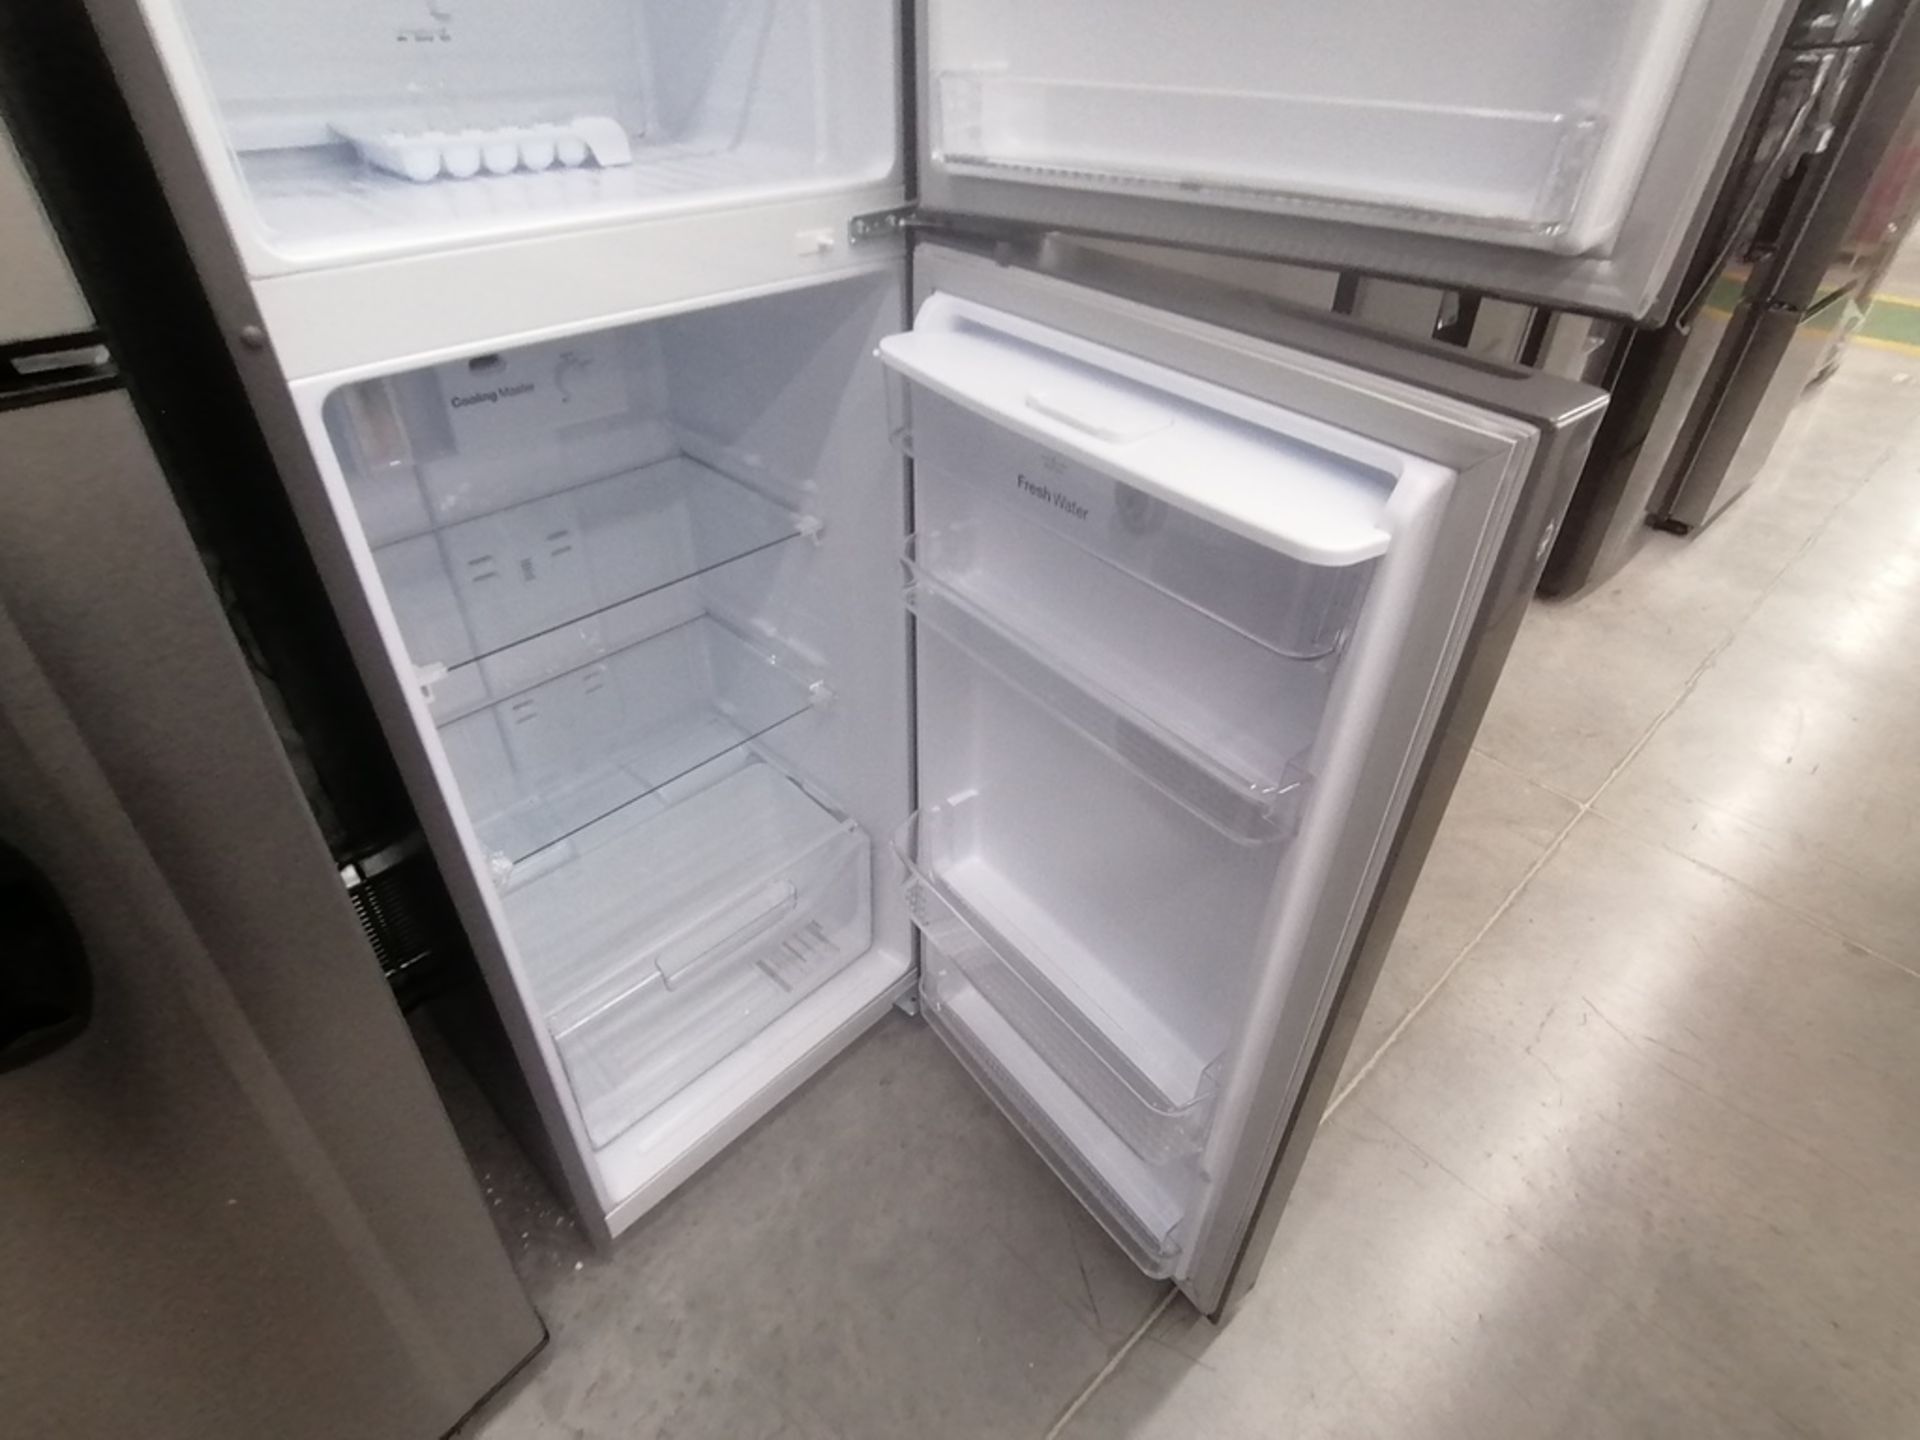 Lote de 2 refrigeradores incluye: 1 Refrigerador con dispensador de agua, Marca Winia, Modelo DFR32 - Image 13 of 15